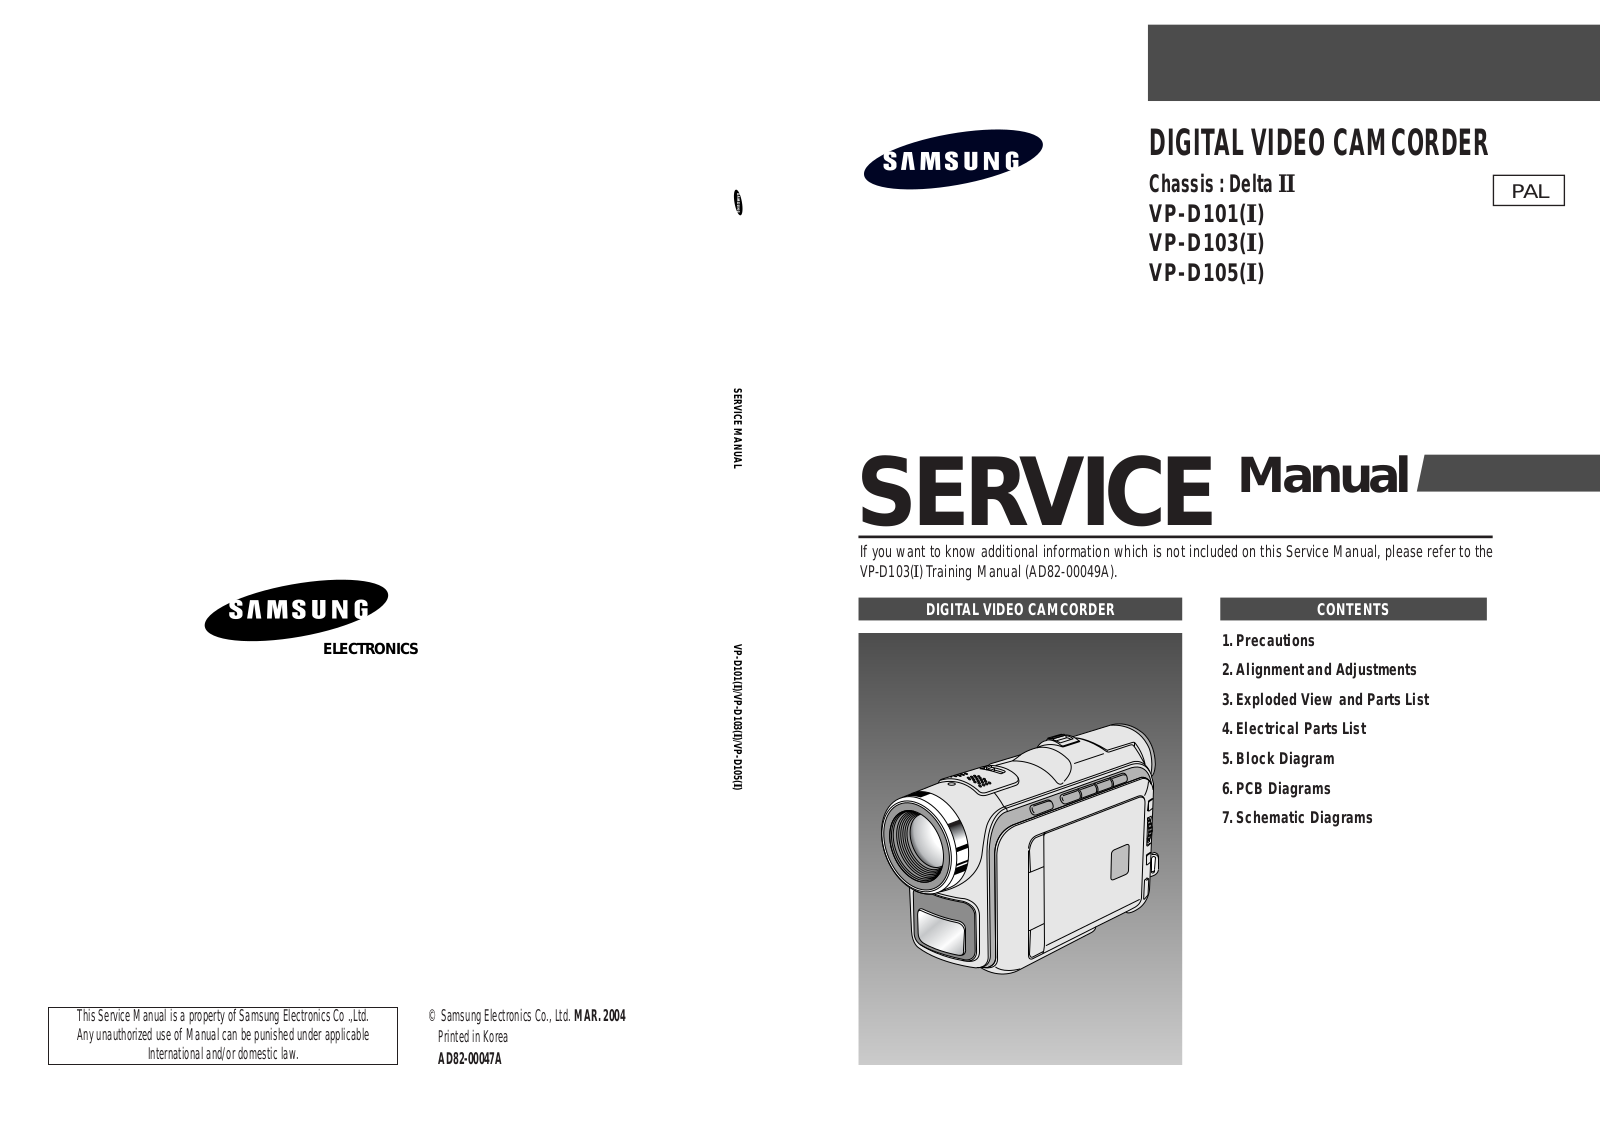 Samsung VP-D101(I), VP-D103(I), VP-D105(I) Service Manual